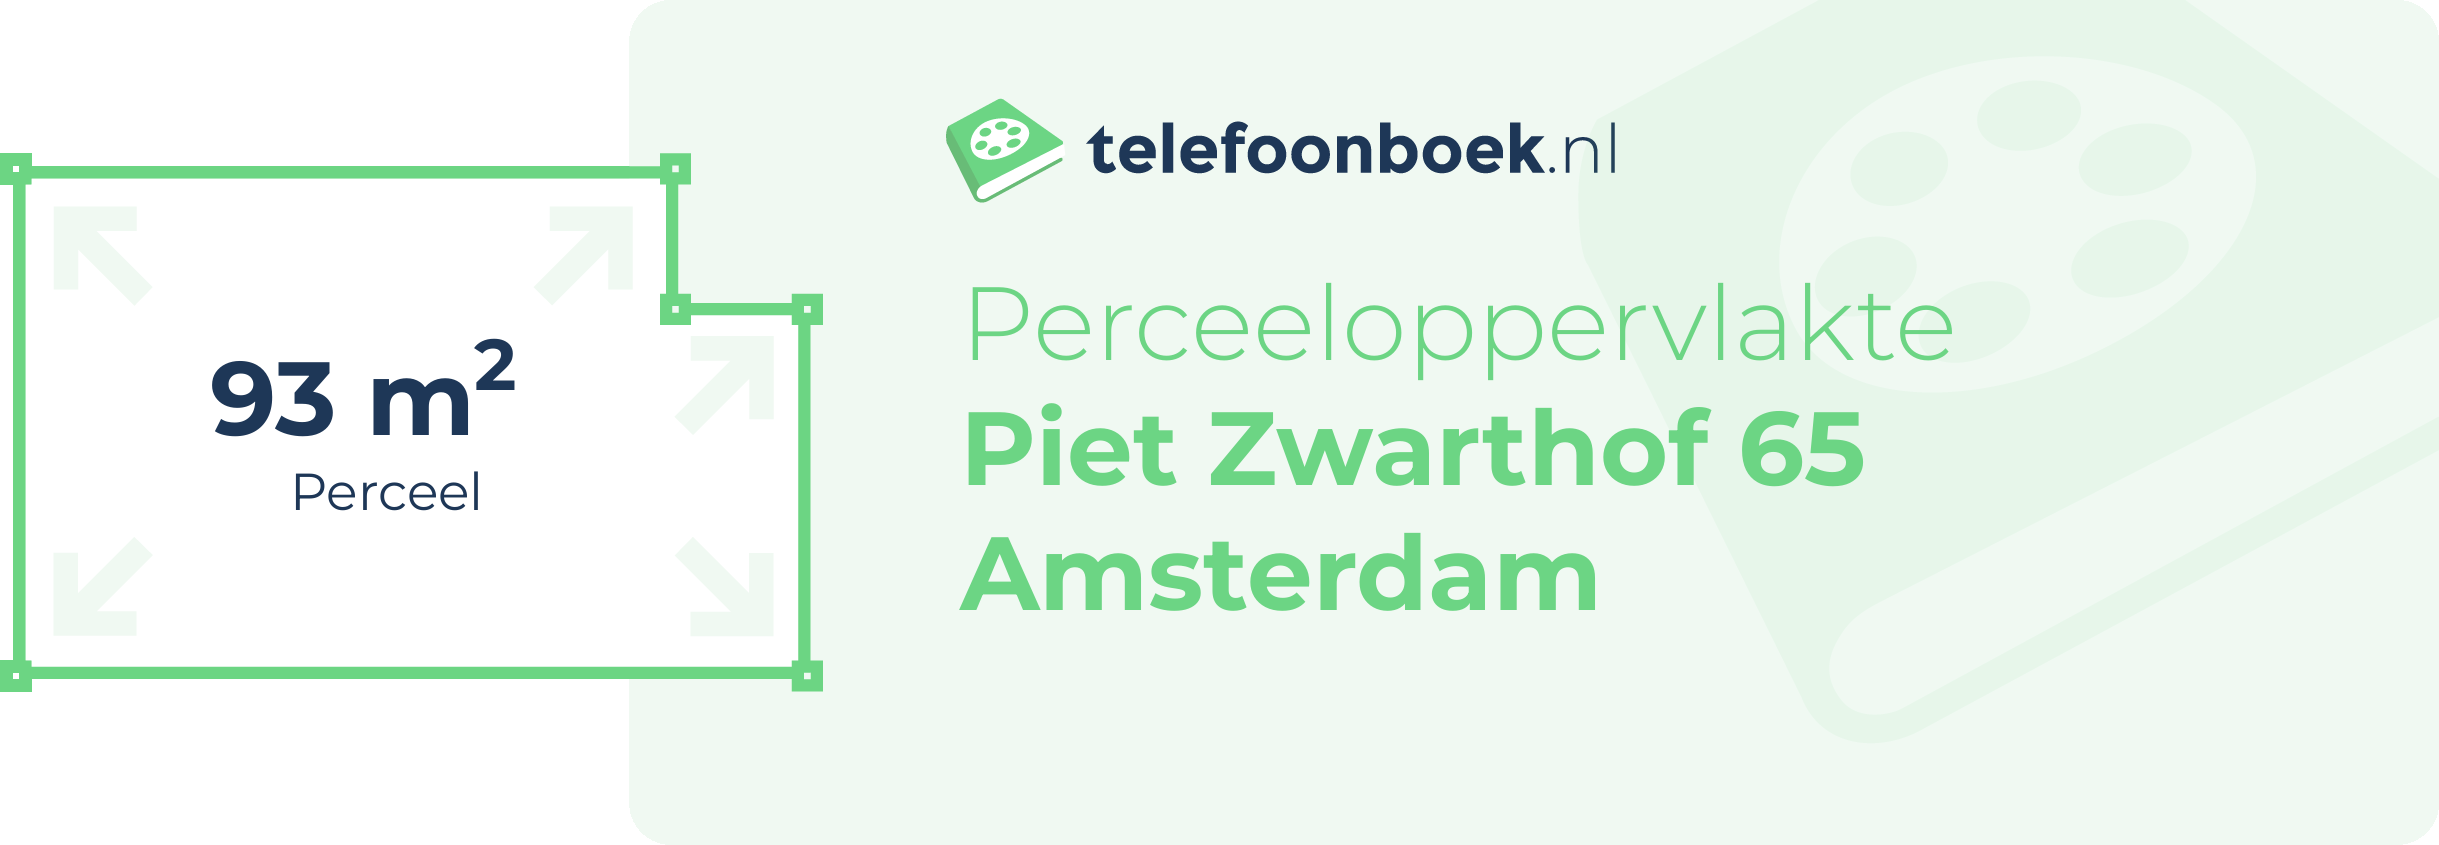 Perceeloppervlakte Piet Zwarthof 65 Amsterdam